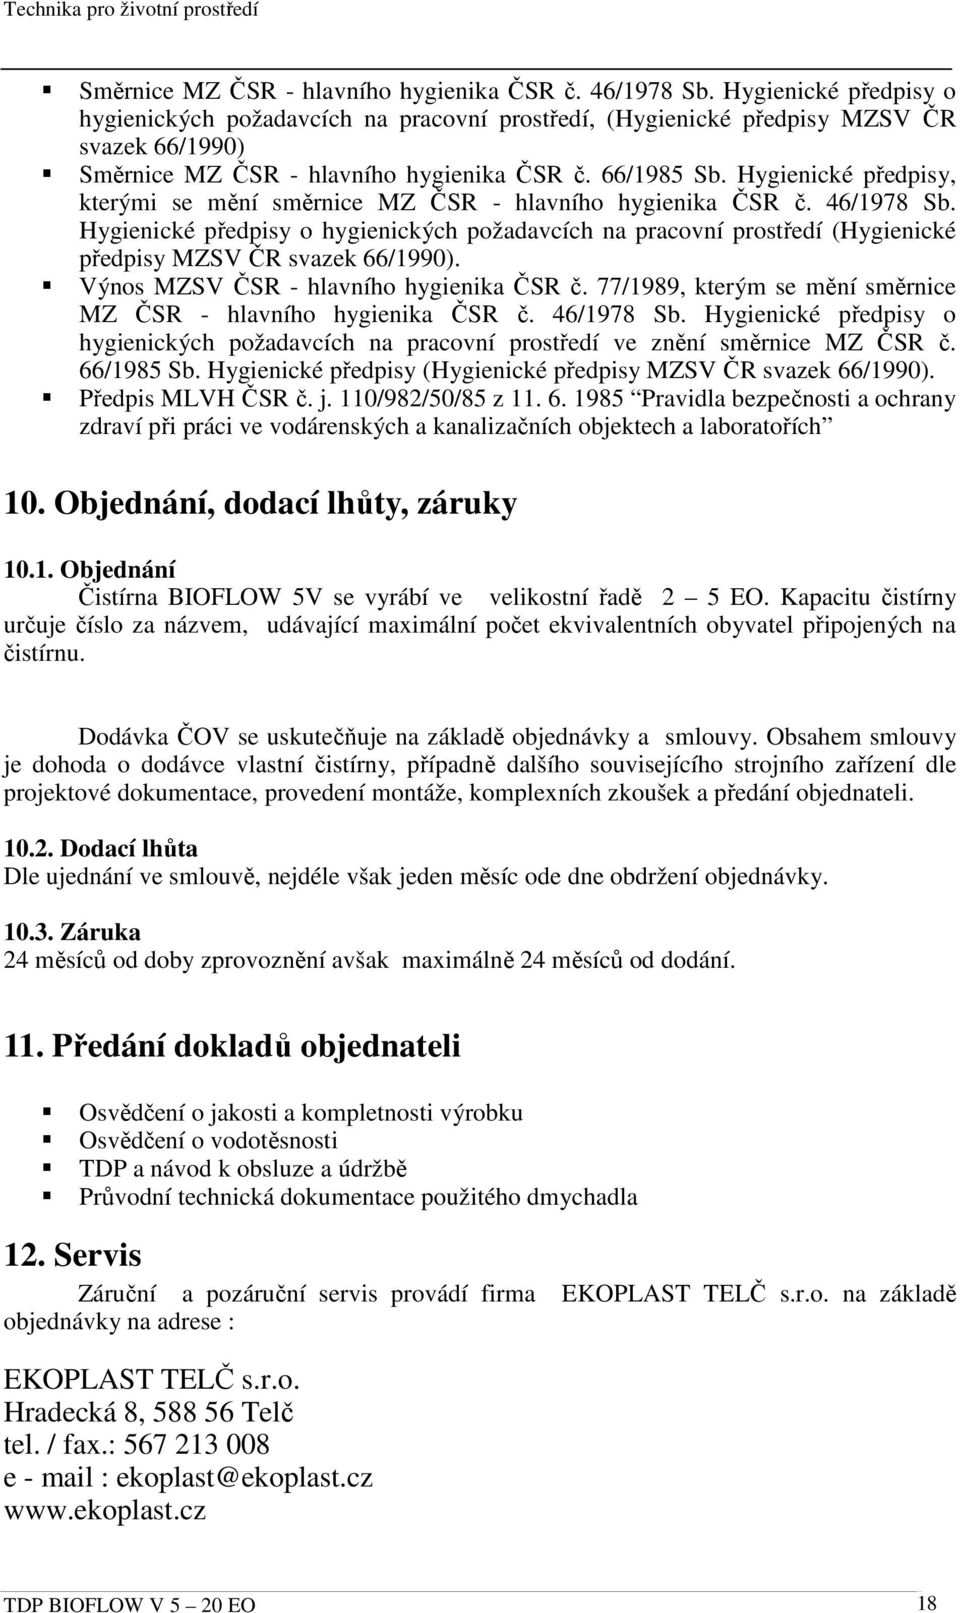 Hygienické předpisy, kterými se mění směrnice MZ ČSR - hlavního hygienika ČSR č. 46/1978 Sb.